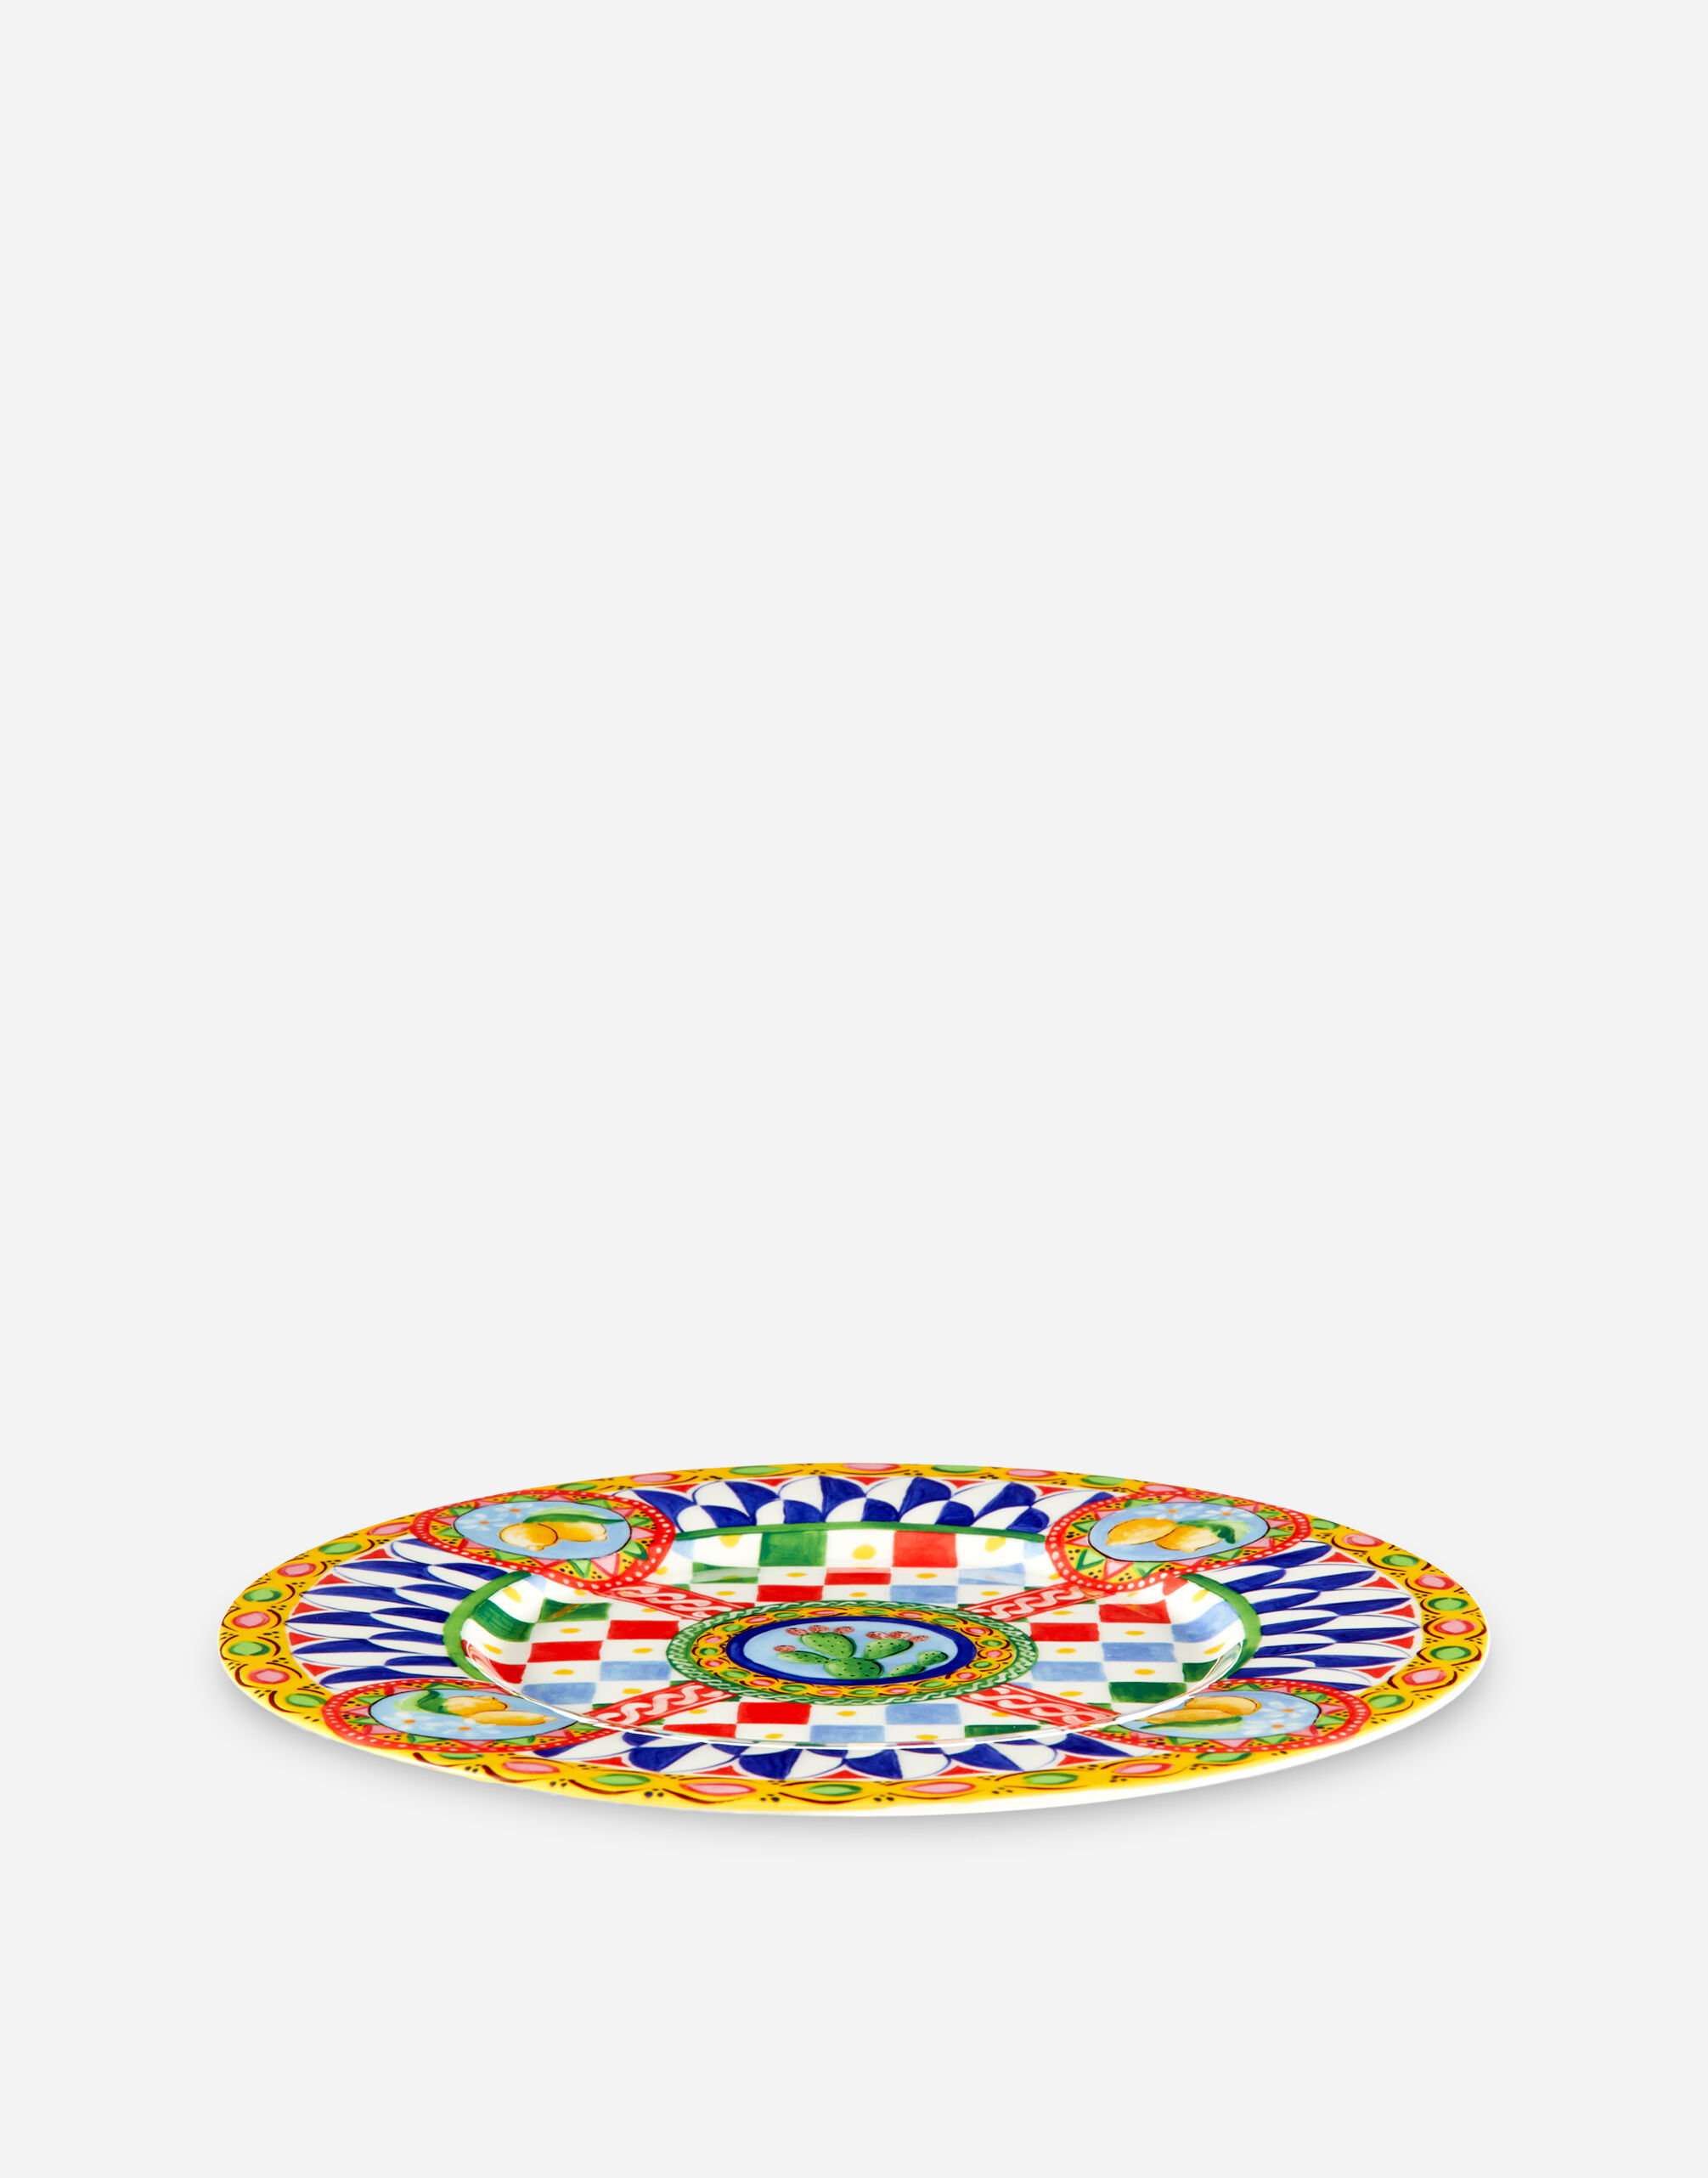 Set 2 Dinner Plates in Fine Porcelain in Multicolor 